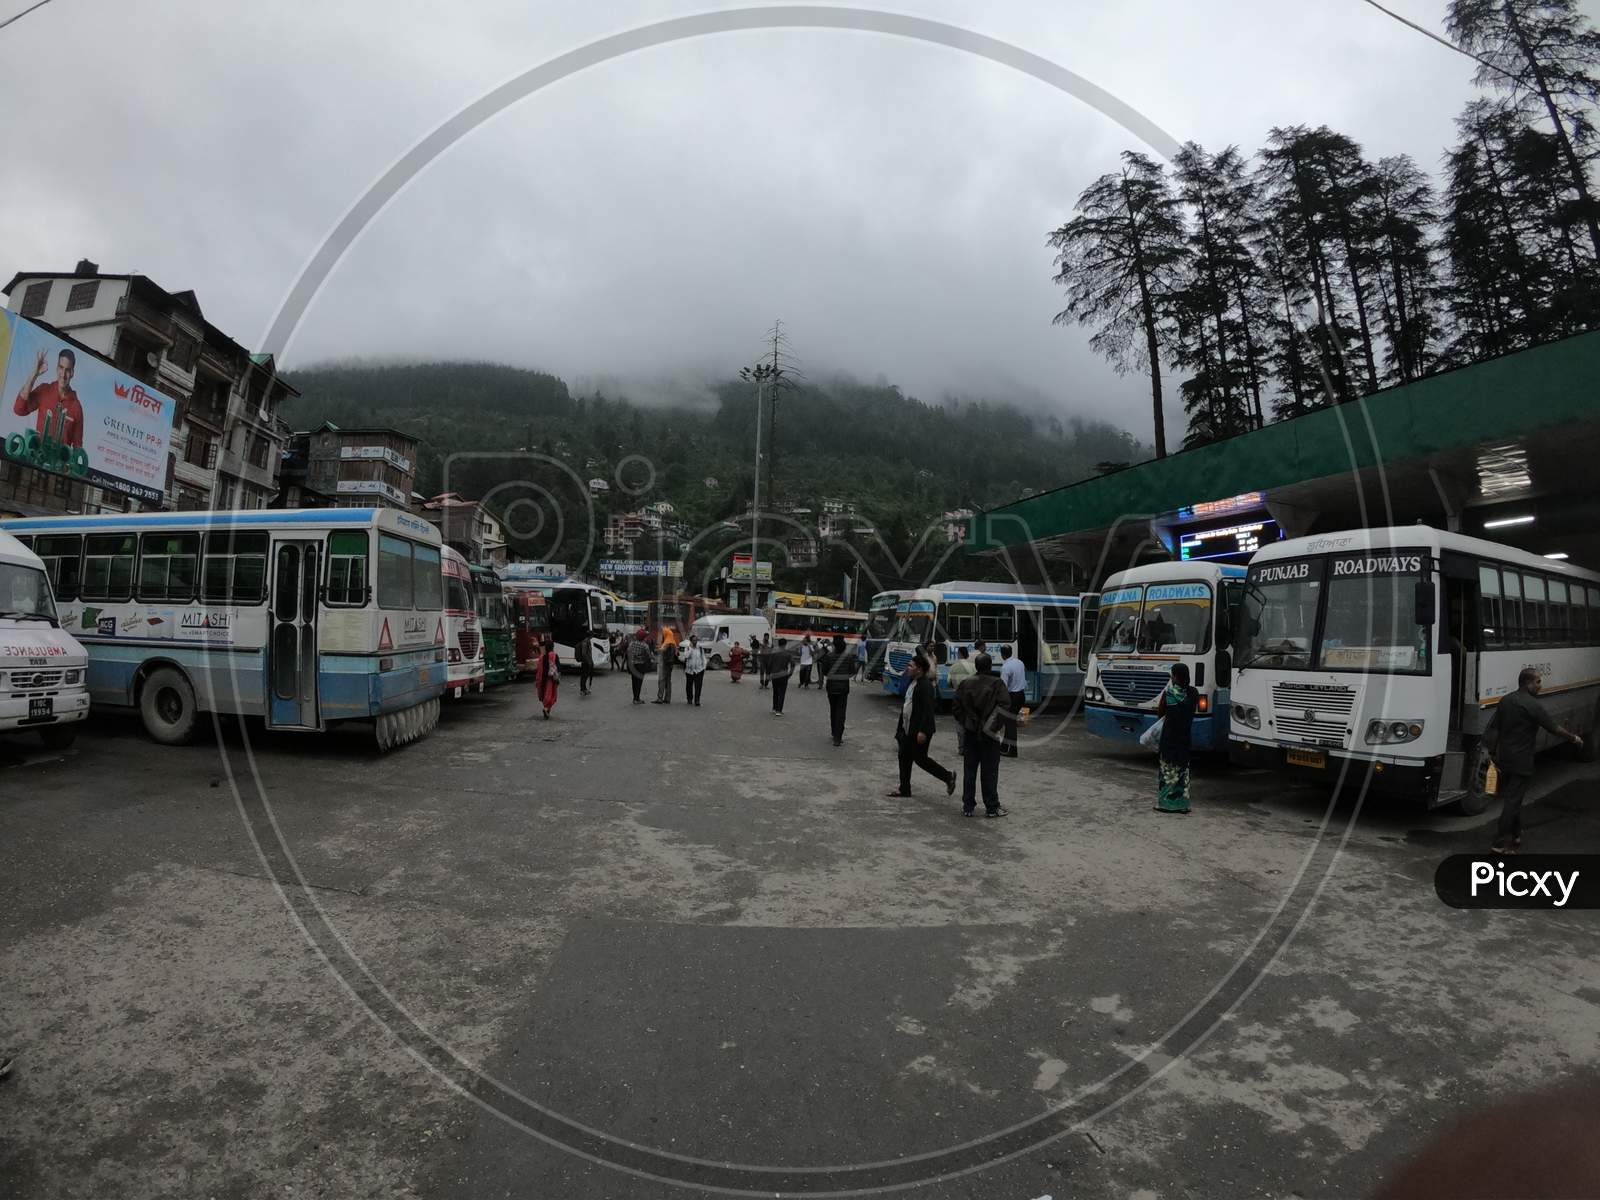 Manali Bus Stand Crowd Bus himachal tourism tourist bus 2020